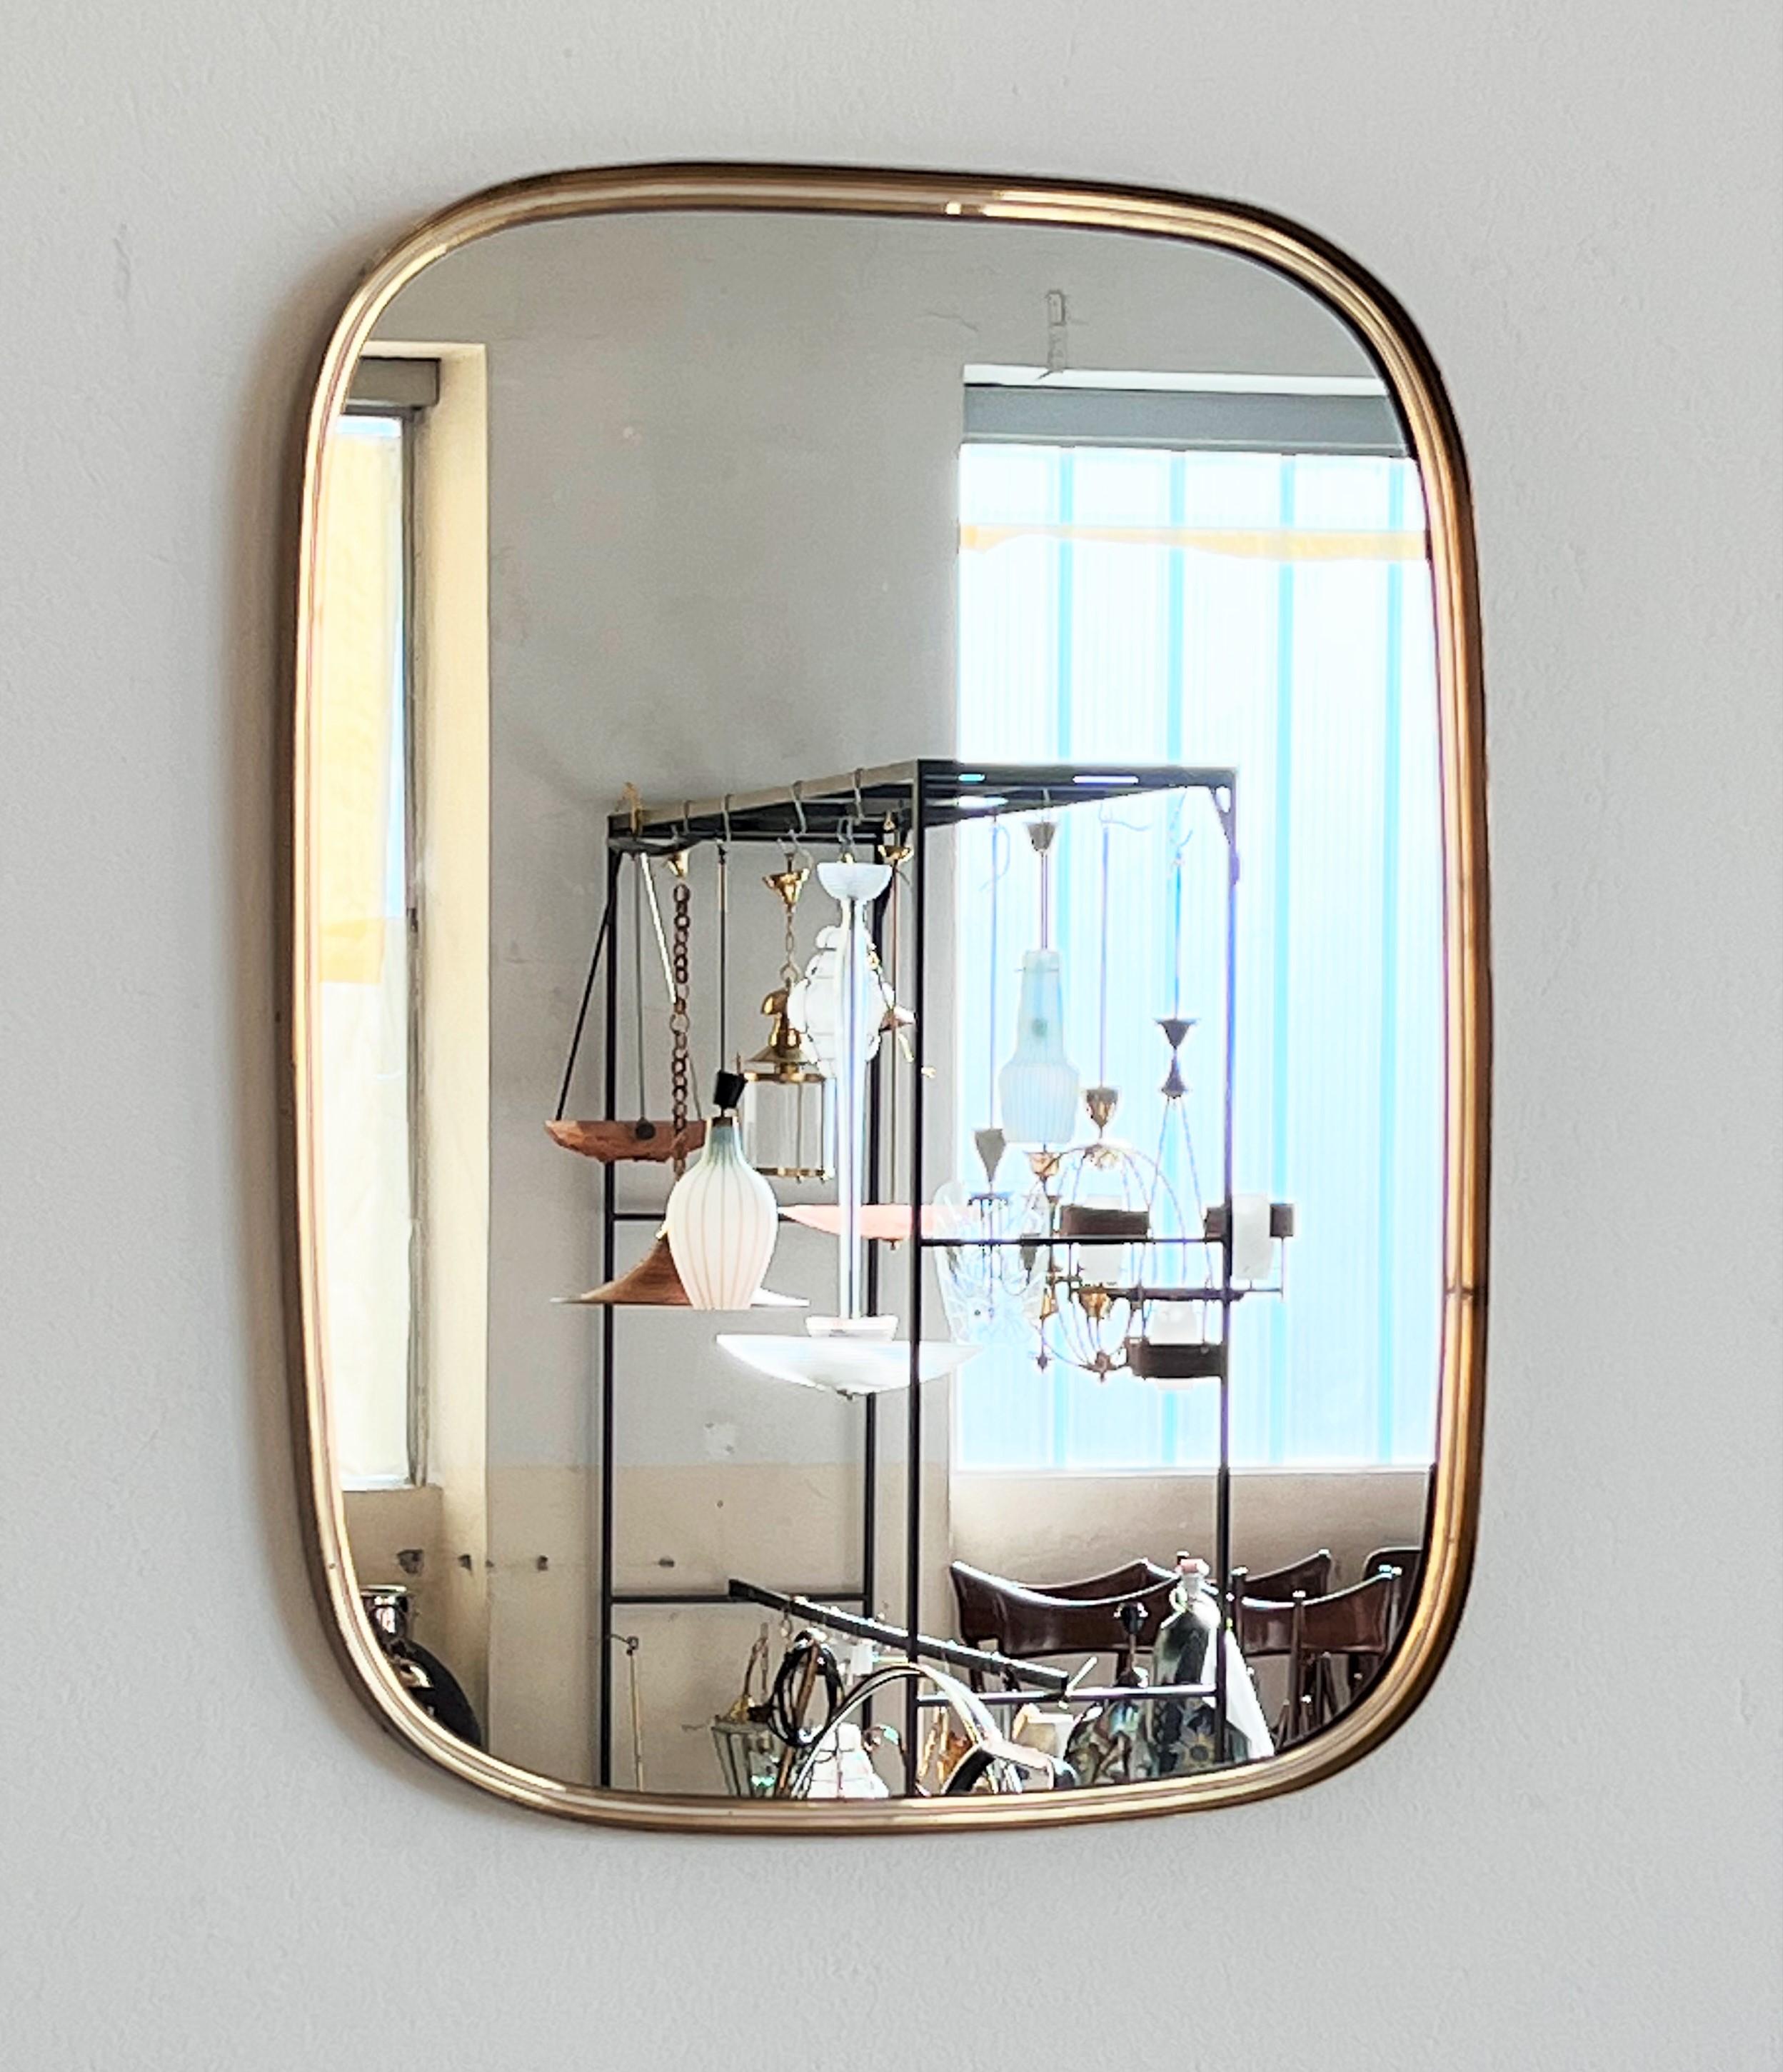 Mid-Century Modern Midcentury Wall Mirror in Brass by Vereinigte Werkstätten, Germany, 1960s For Sale